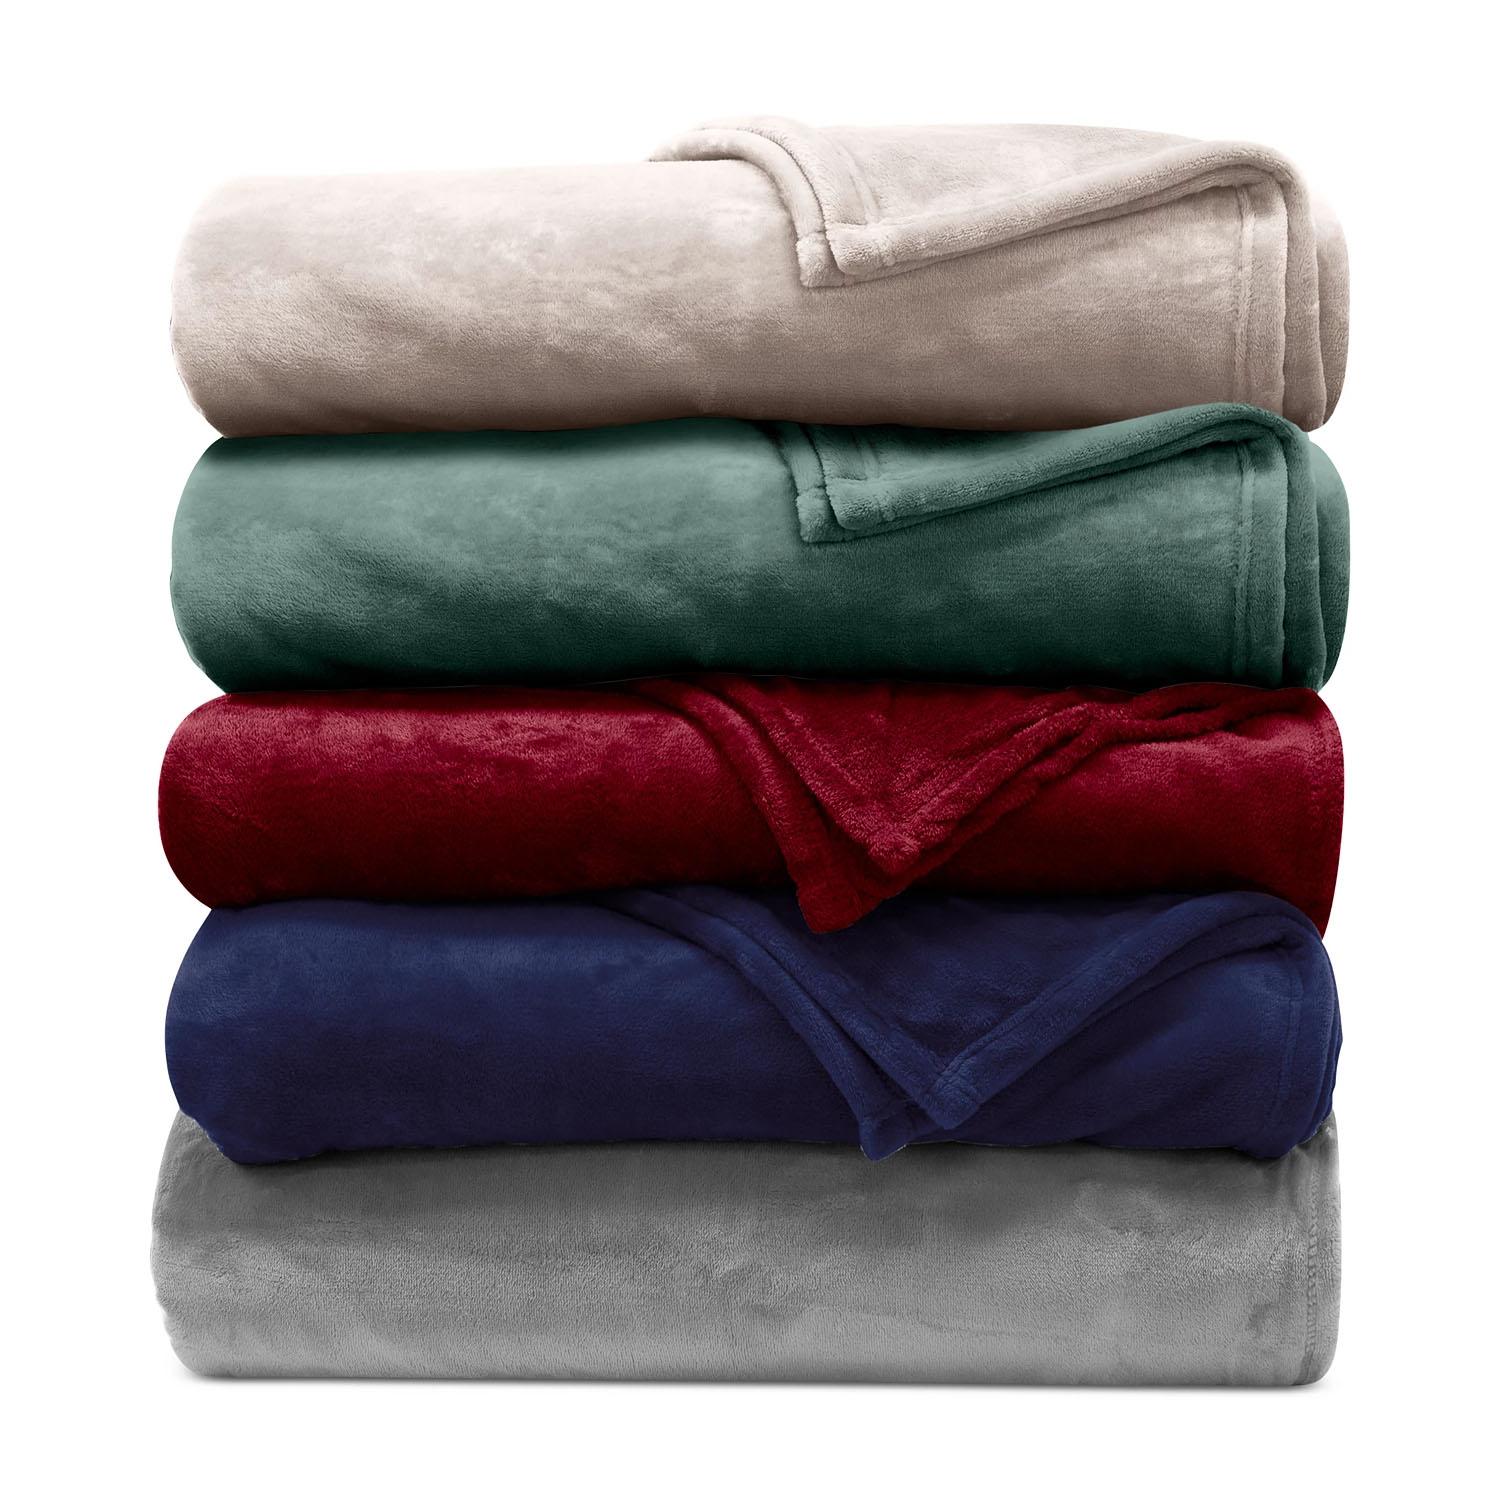 Ralph Lauren Micromink Plush Blanket for $25.98 Shipped